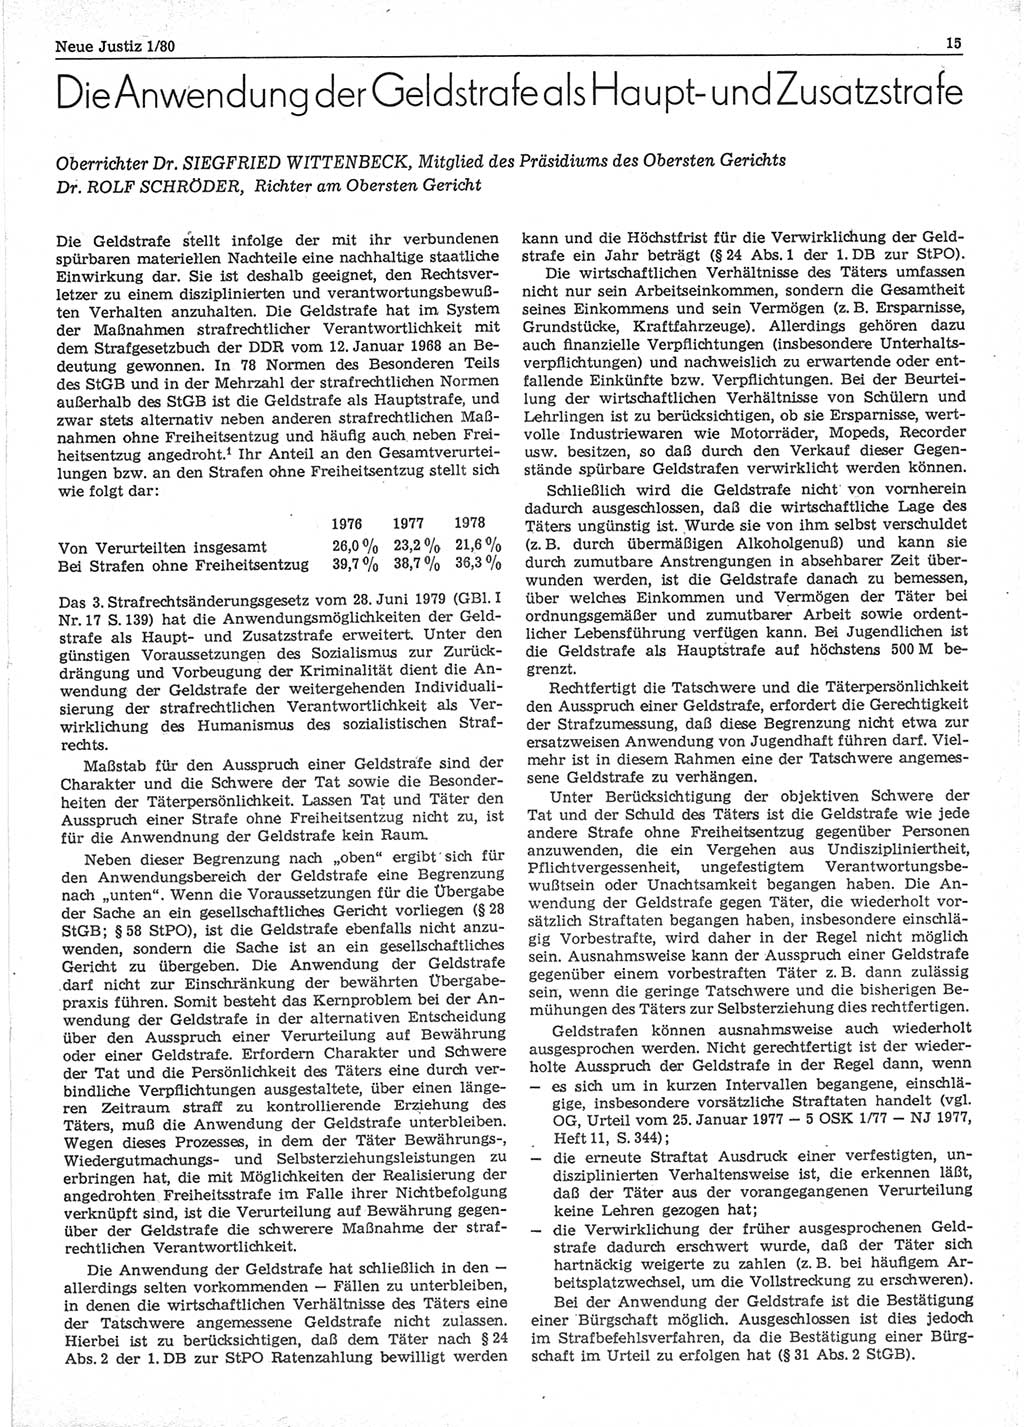 Neue Justiz (NJ), Zeitschrift für sozialistisches Recht und Gesetzlichkeit [Deutsche Demokratische Republik (DDR)], 34. Jahrgang 1980, Seite 15 (NJ DDR 1980, S. 15)